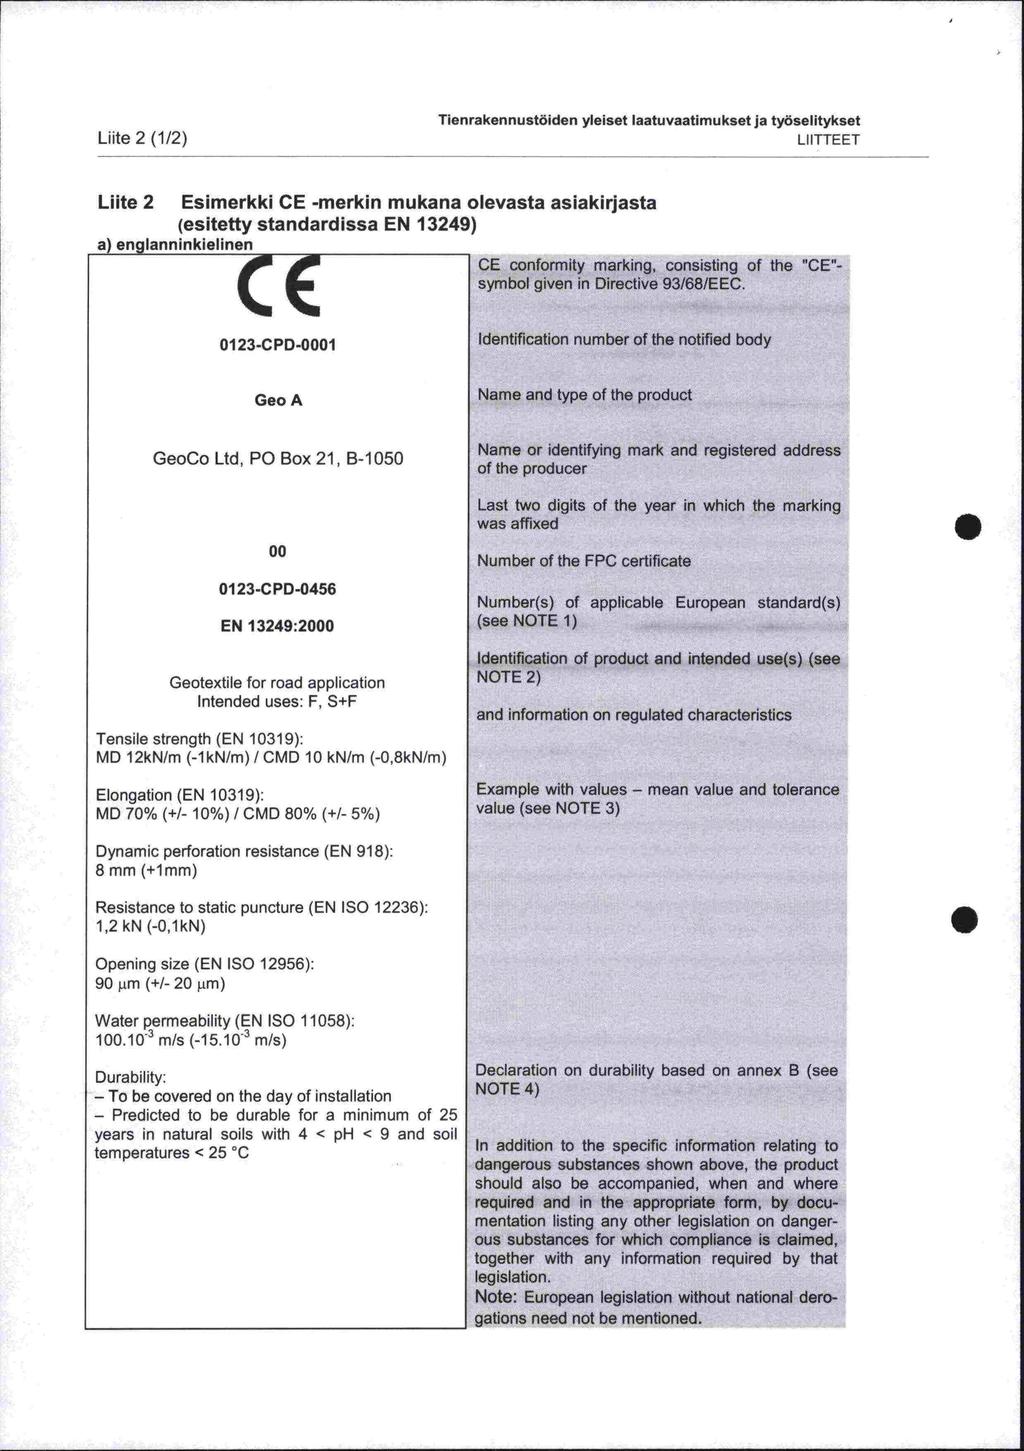 Tienrakennustöiden yleiset laatuvaatimukset ja työselitykset Liite 2 (1/2) LIITTEET - Liite 2 Esimerkki CE -merkin mukana olevasta asiakirjasta 1cscitr++t, +inrirdicei M 1&O!